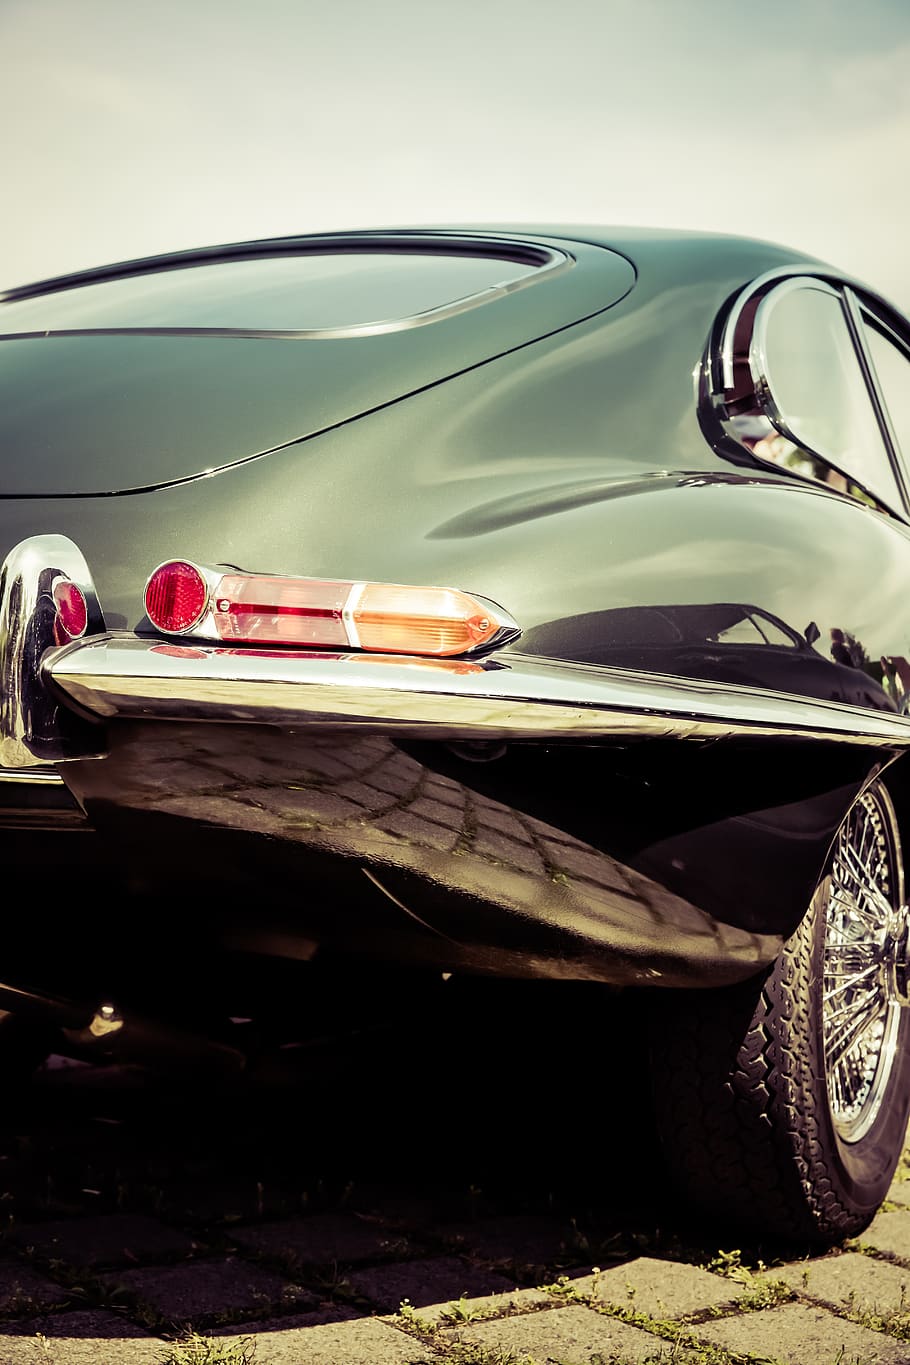 jaguar, tipe e, oldtimer, klasik, tua, kemewahan, kendaraan, Inggris, Mobil sport, keanehan